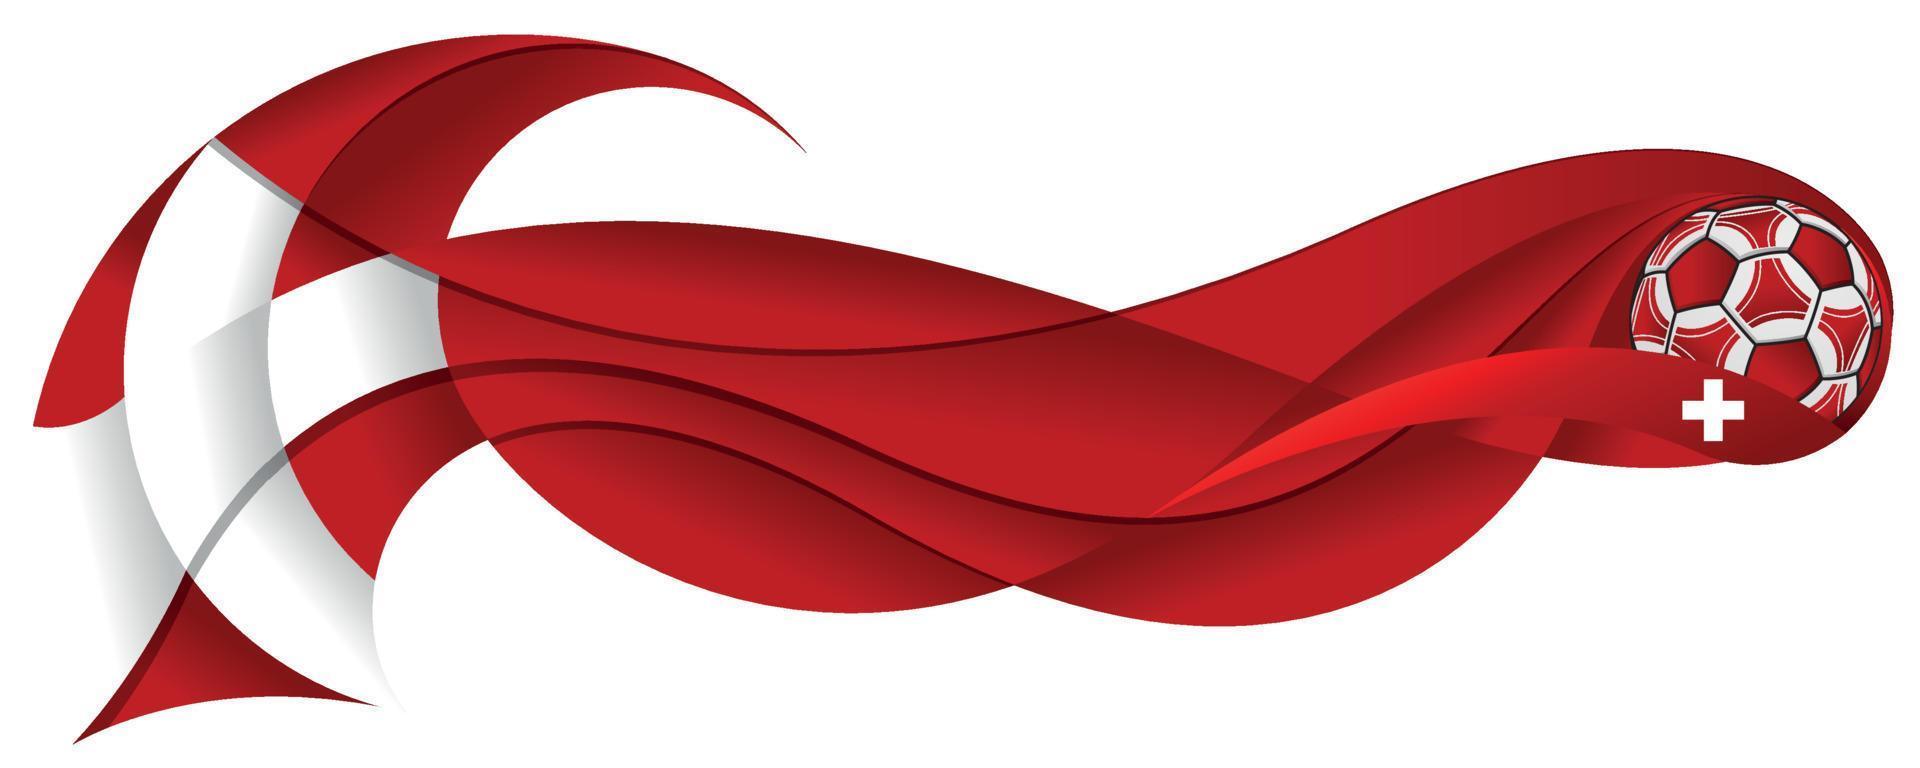 Weißer und roter Fußball, der eine abstrakte gewellte Spur mit den Farben der Schweizer Flagge auf einem weißen Hintergrund hinterlässt vektor